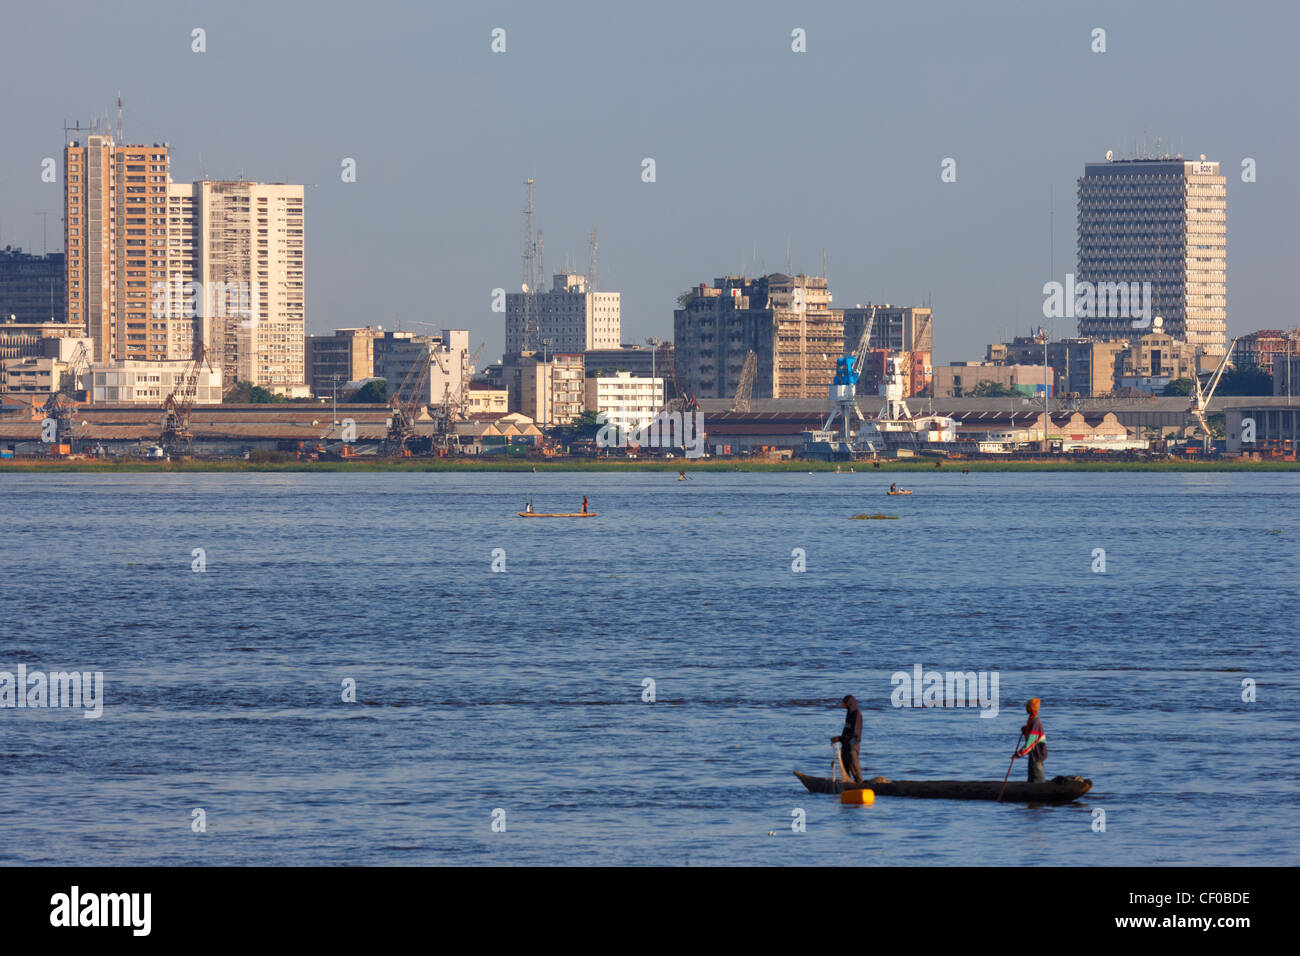 Skyline de Kinshasa, République démocratique du Congo, l'Afrique Banque D'Images